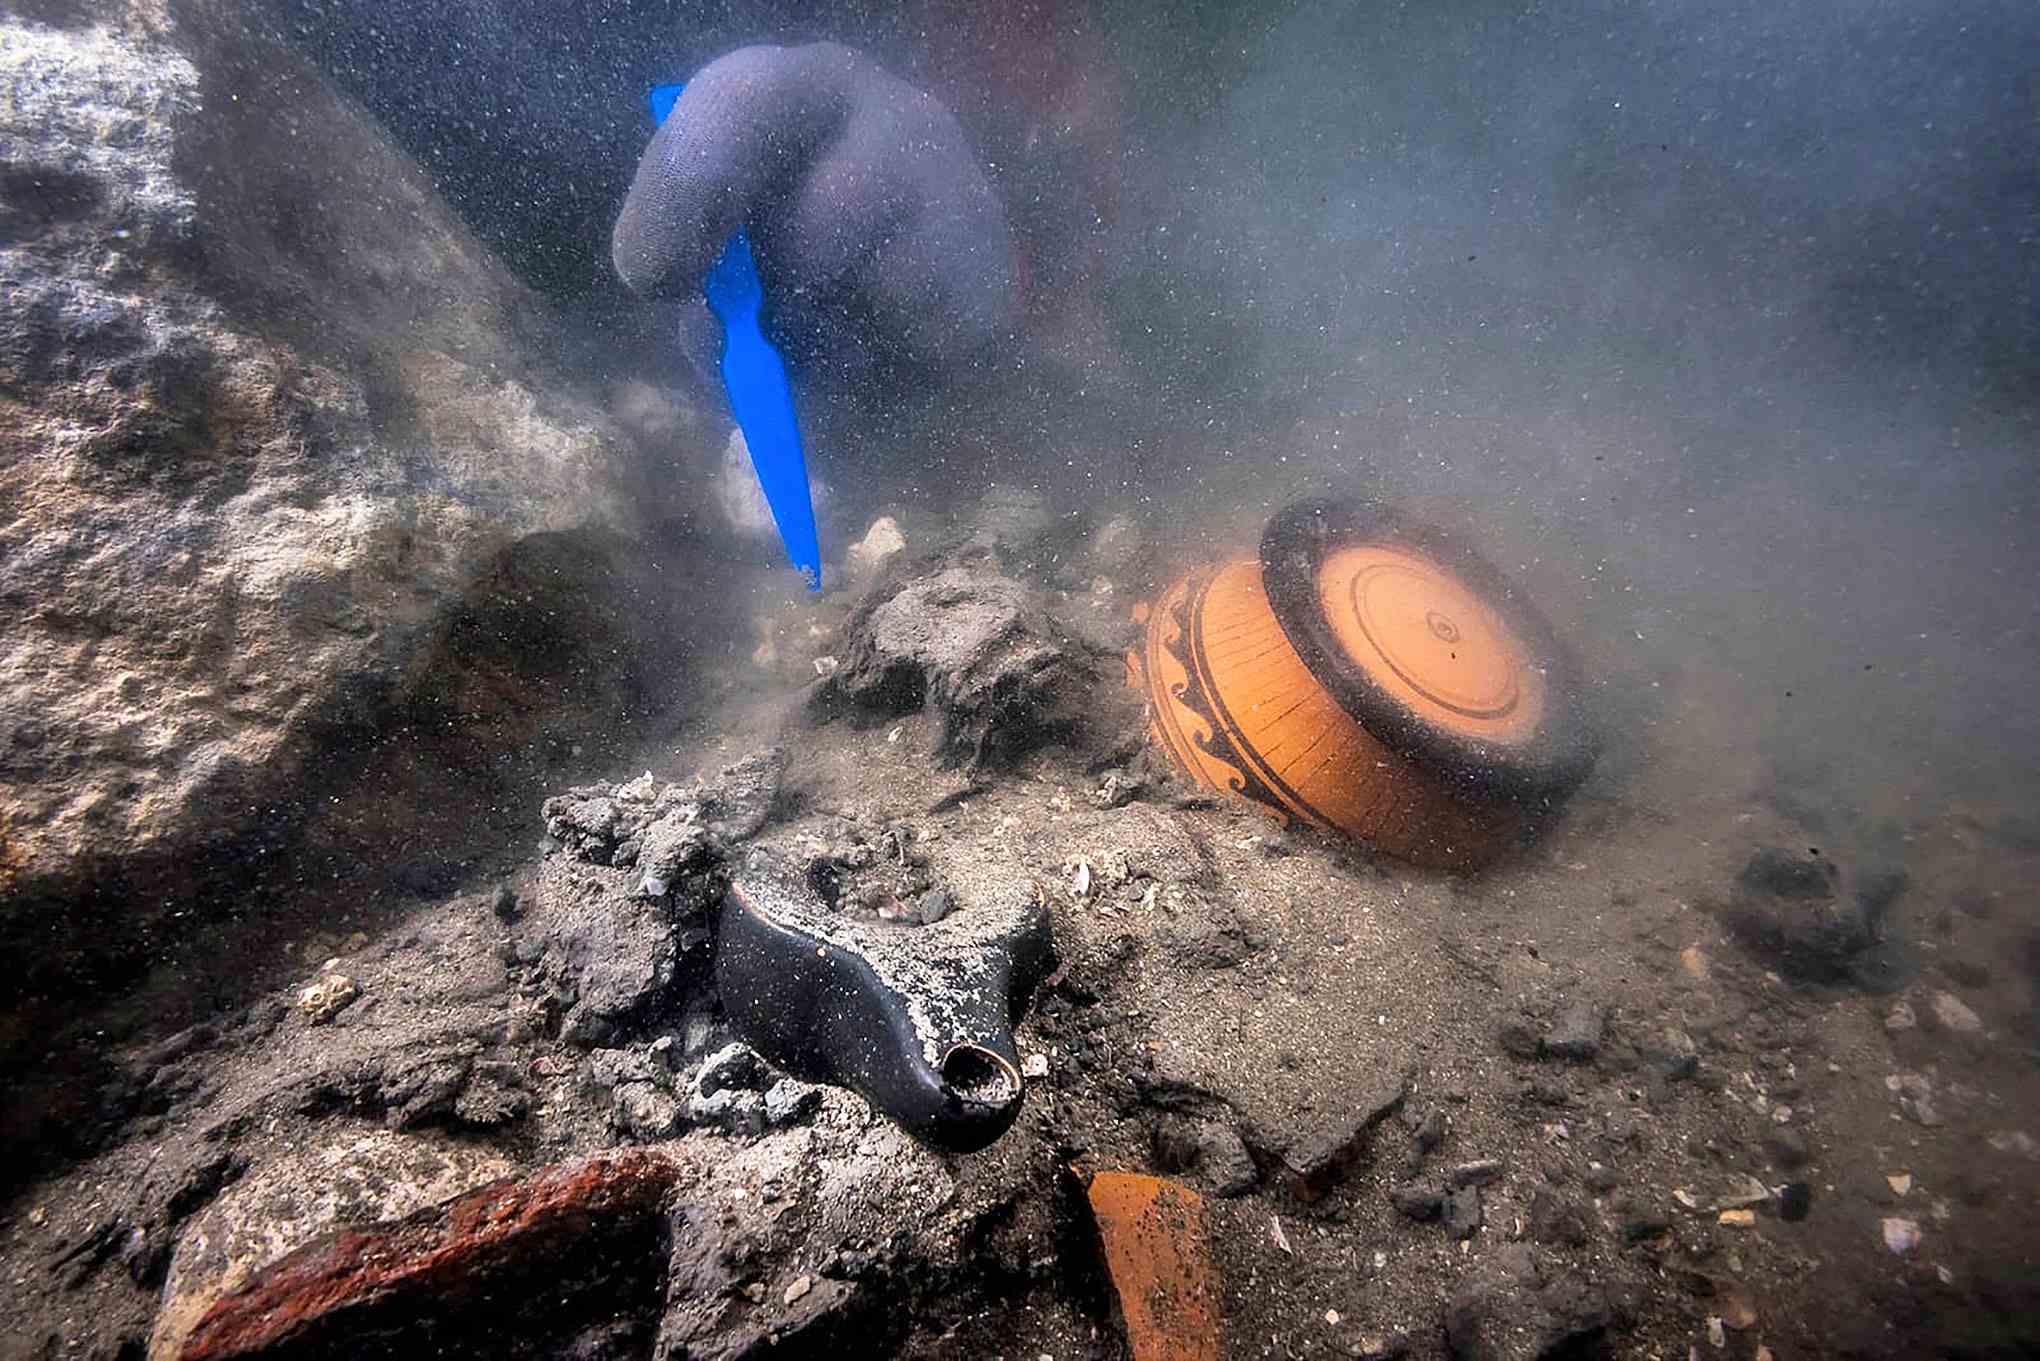 Des paniers vieux de 2,400 2 ans encore remplis de fruits trouvés dans la ville égyptienne submergée XNUMX